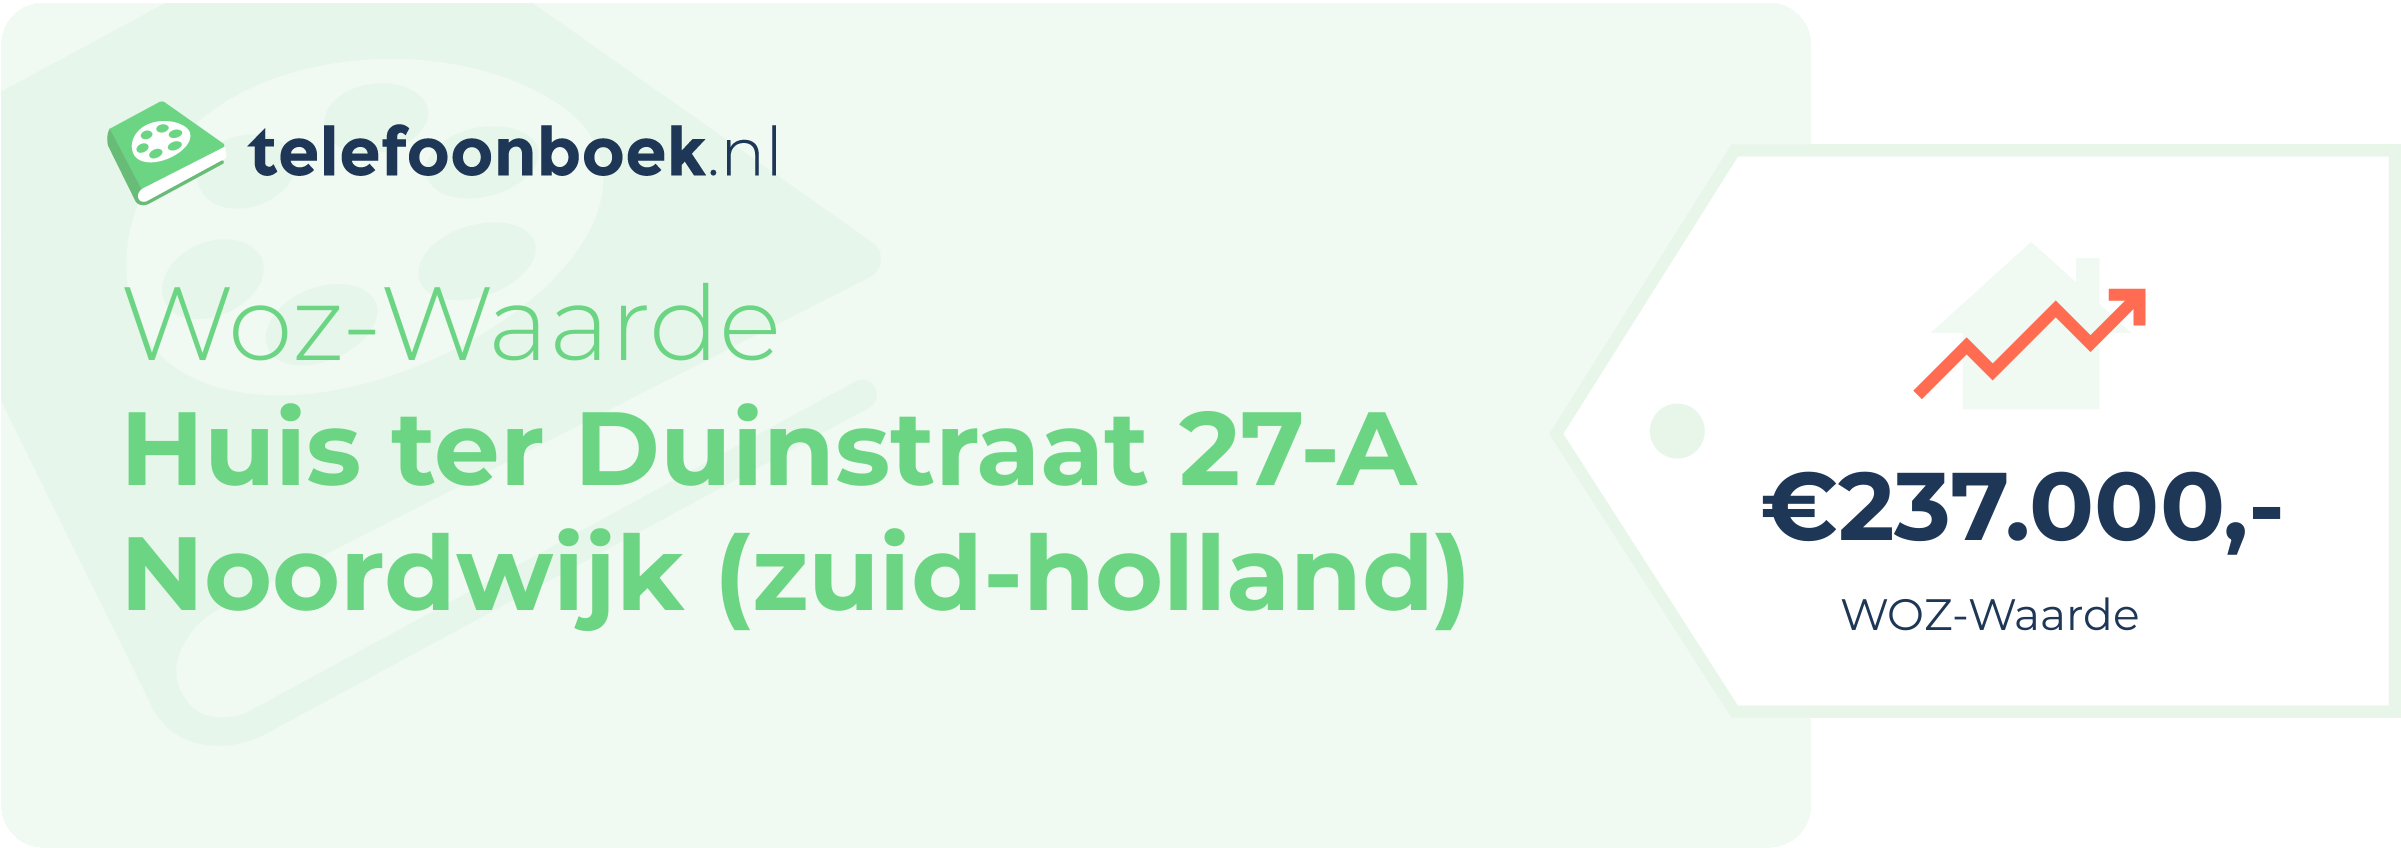 WOZ-waarde Huis Ter Duinstraat 27-A Noordwijk (Zuid-Holland)